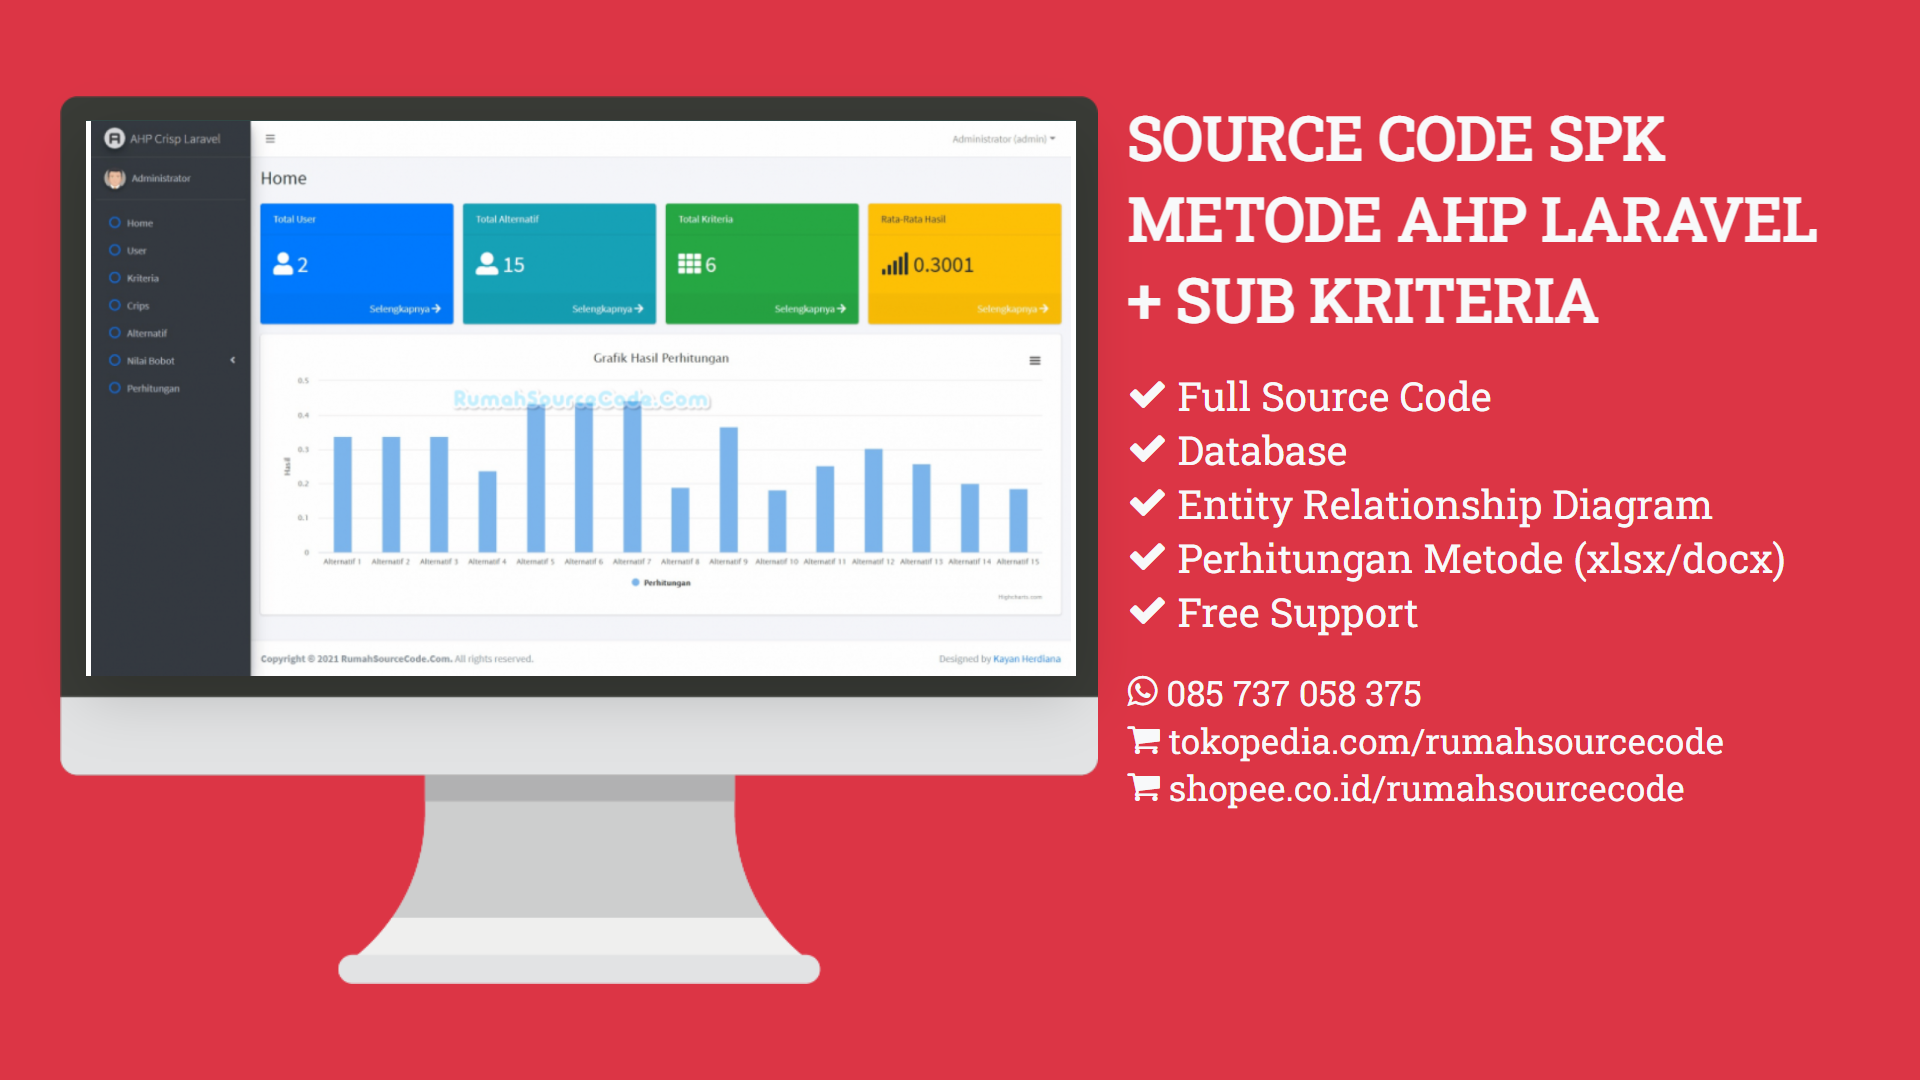 Source Code SPK Metode AHP Laravel + Sub Kriteria